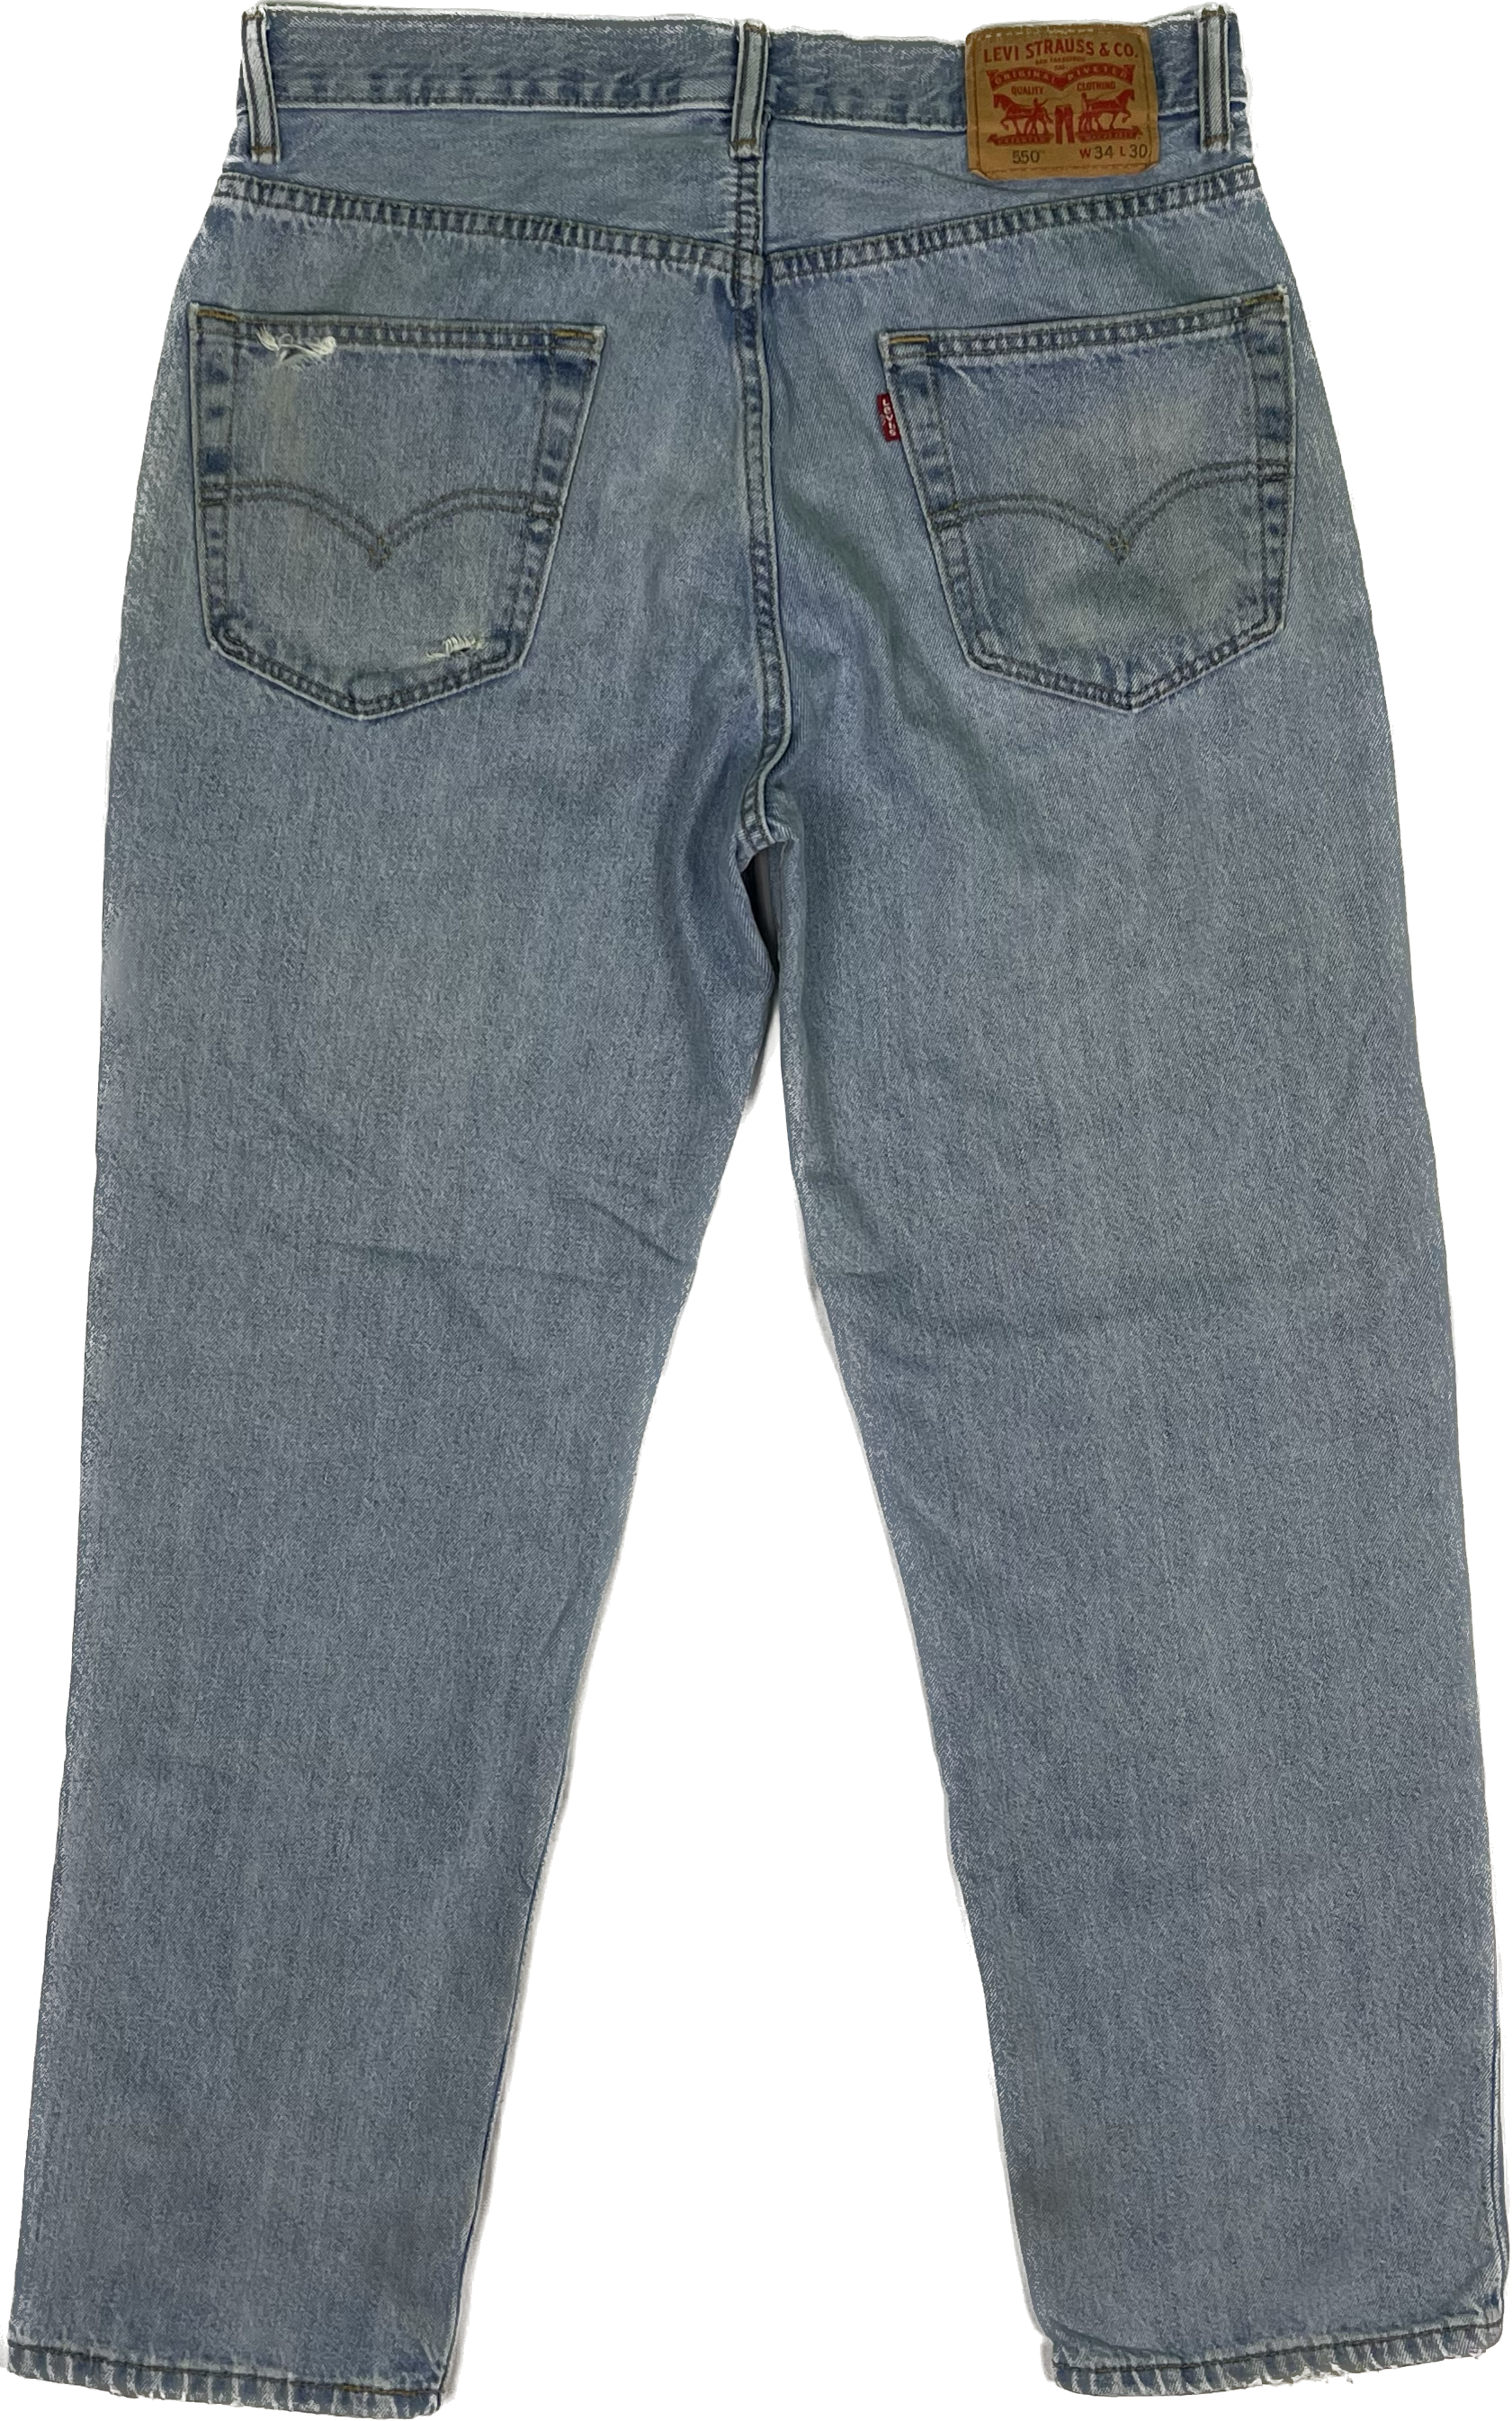 Levi&#39;s 550 Jeans